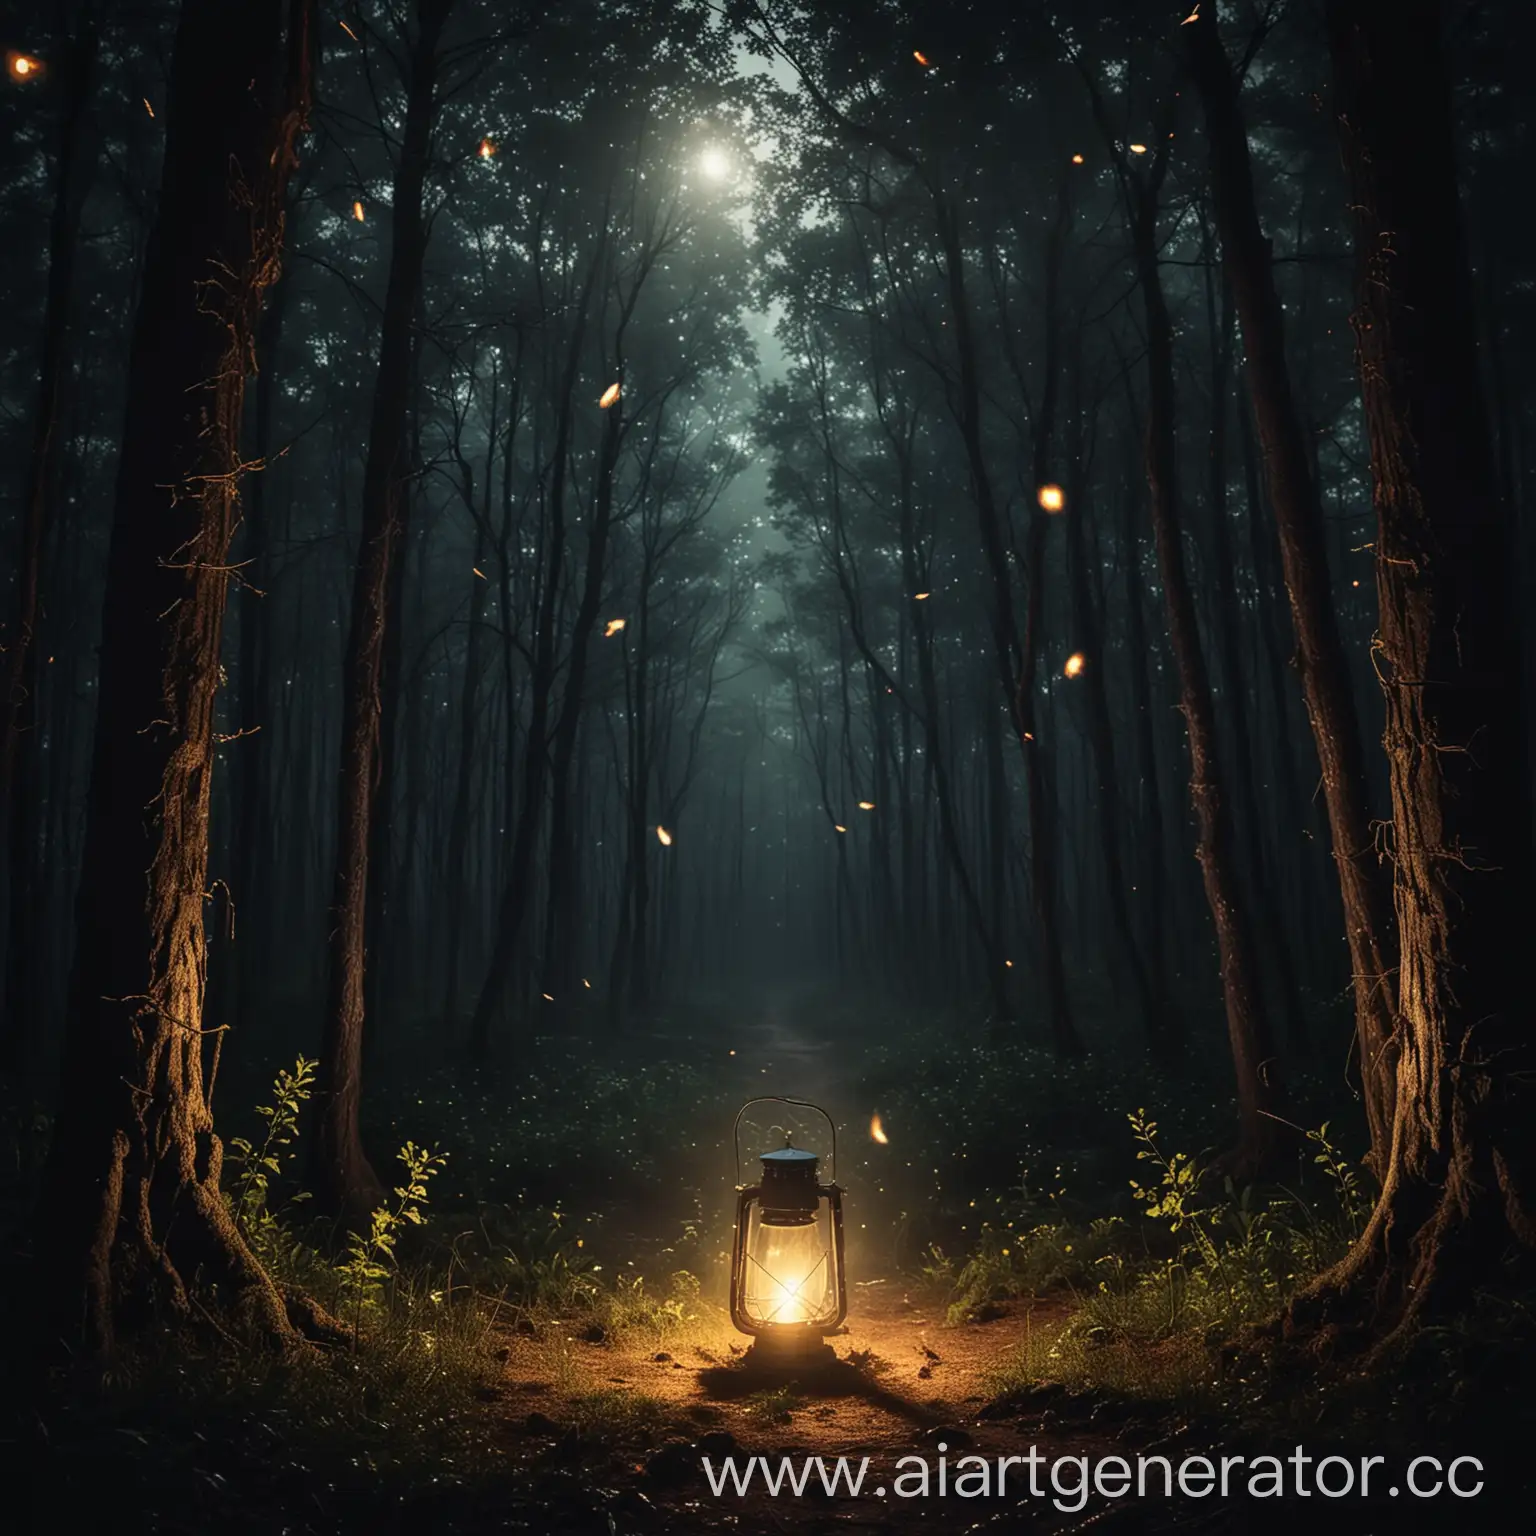 Изображение с тёмным лесом, в центре фонарь, яркий свет. Ночь, светлячки